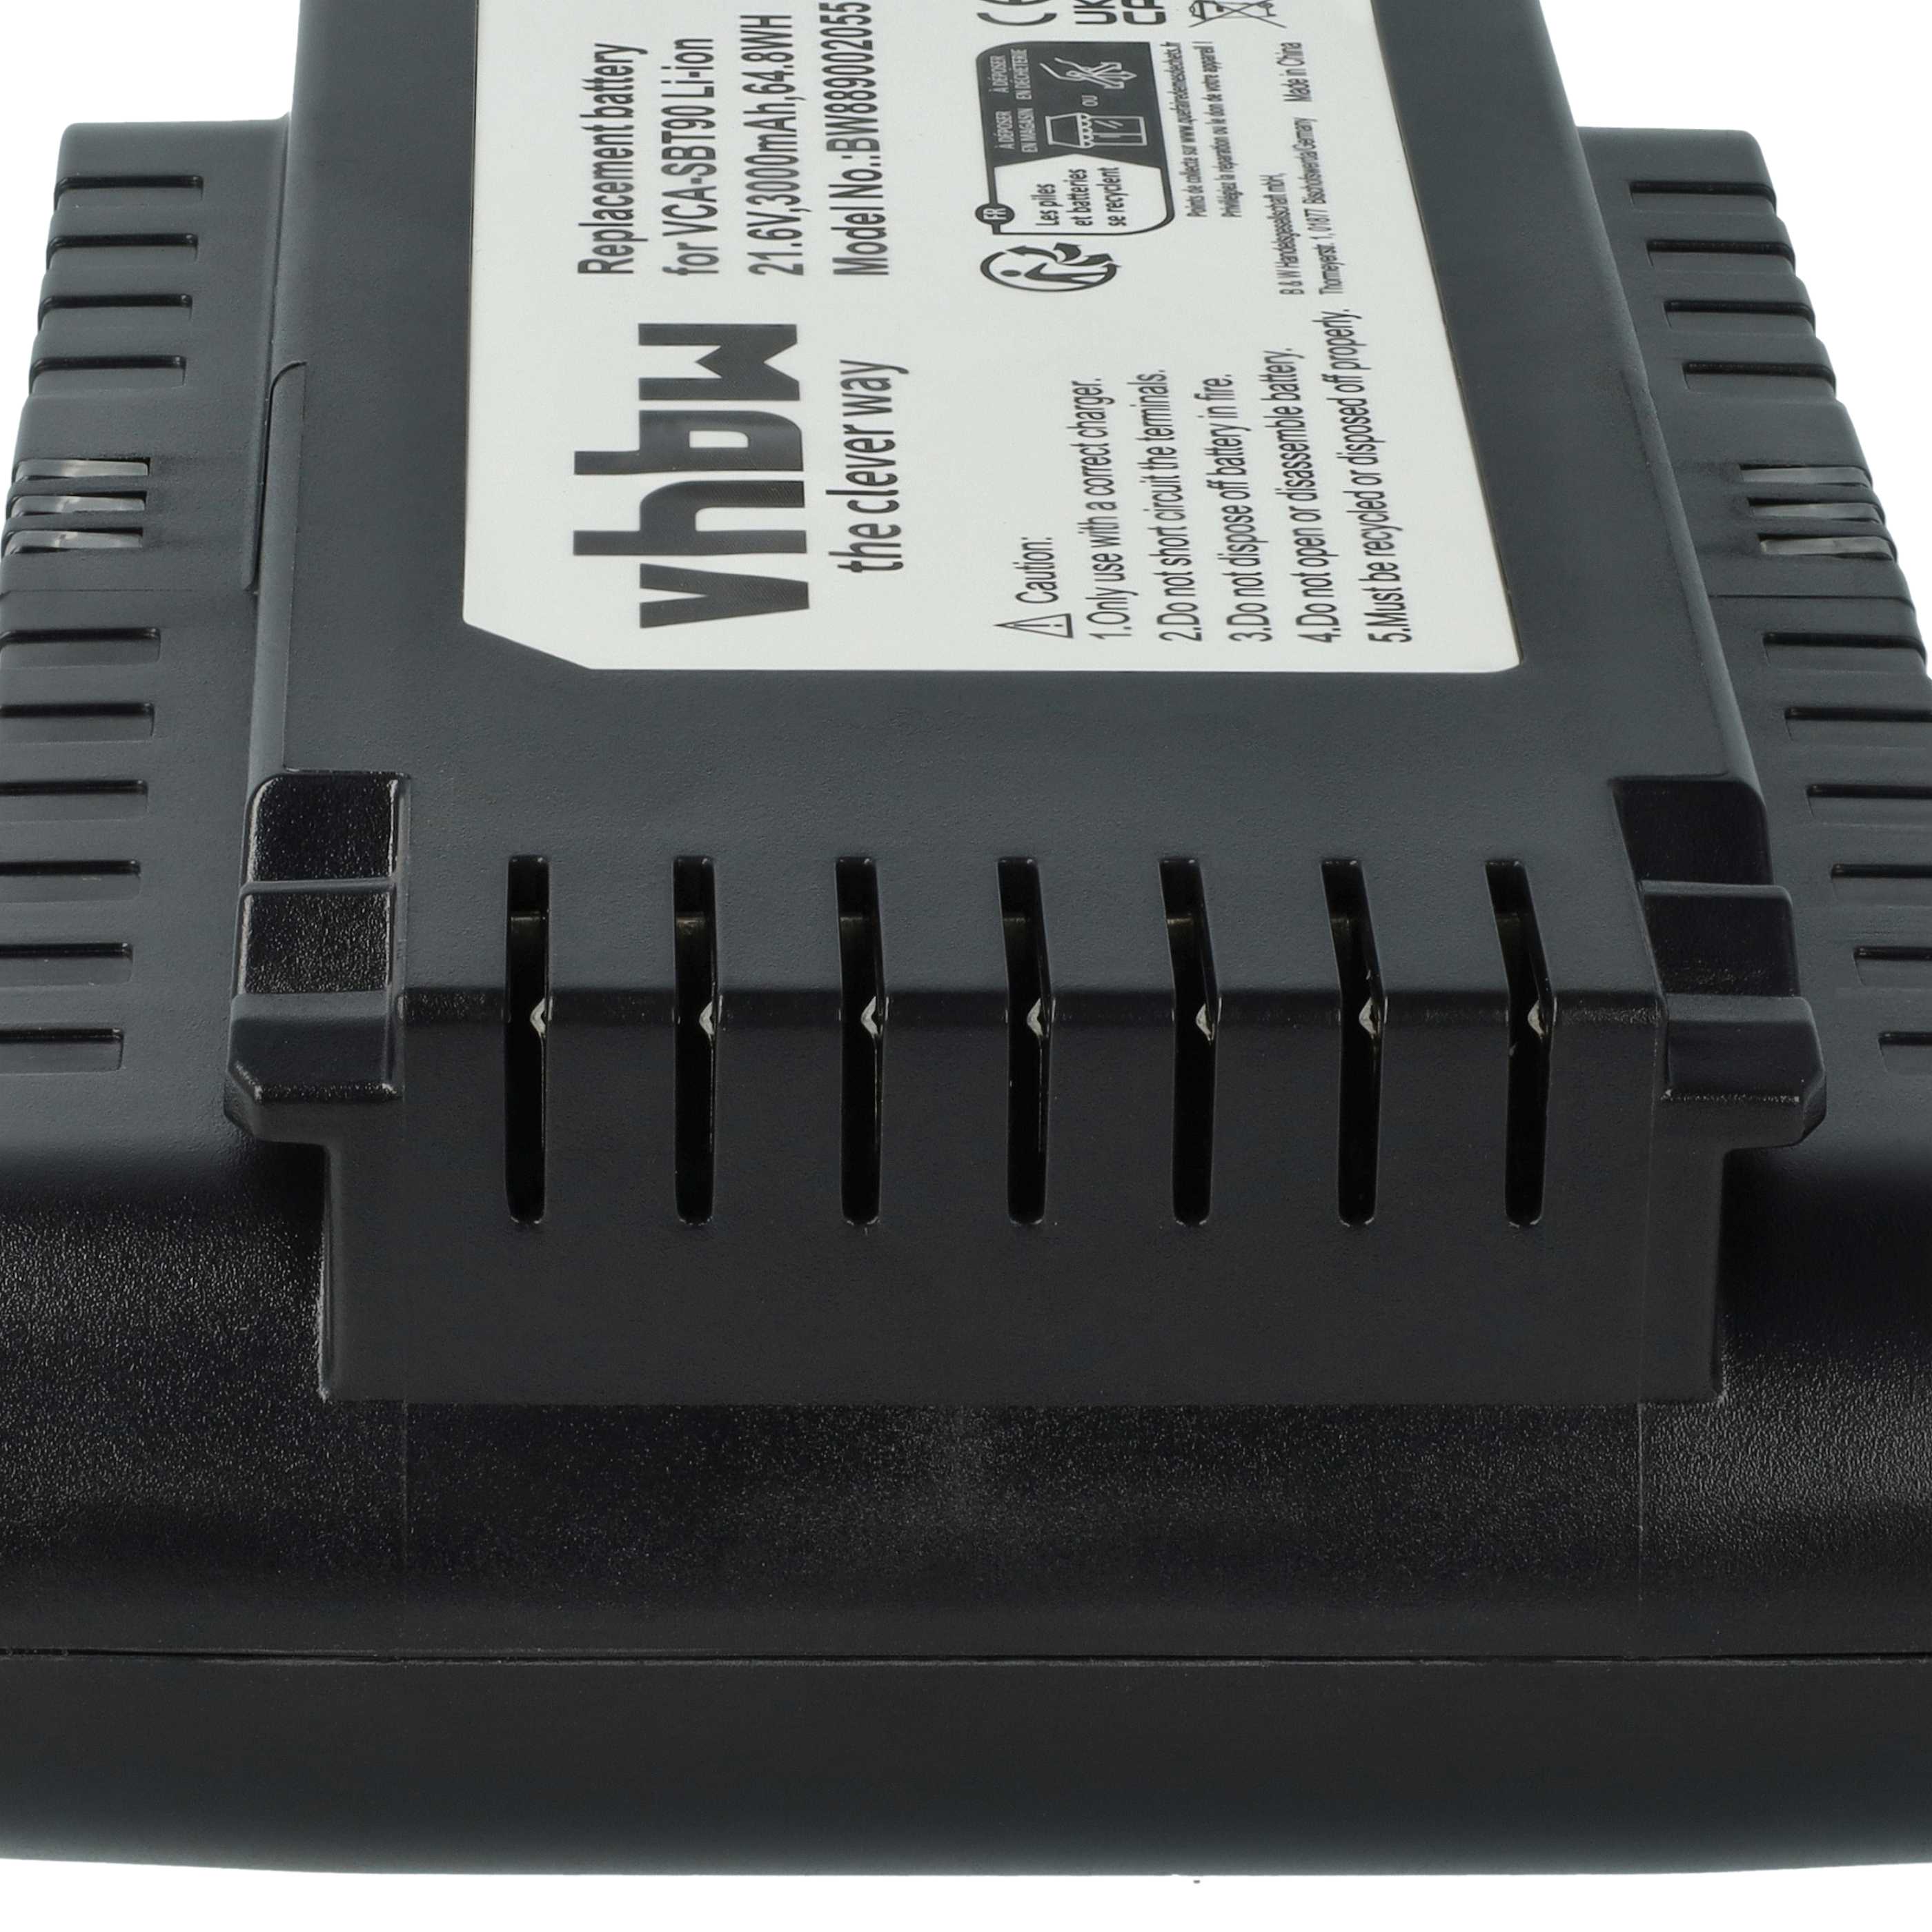 Batteria sostituisce Samsung VCA-SBT90, DJ96-00221A per aspirapolvere Samsung - 3000mAh 21,6V Li-Ion nero